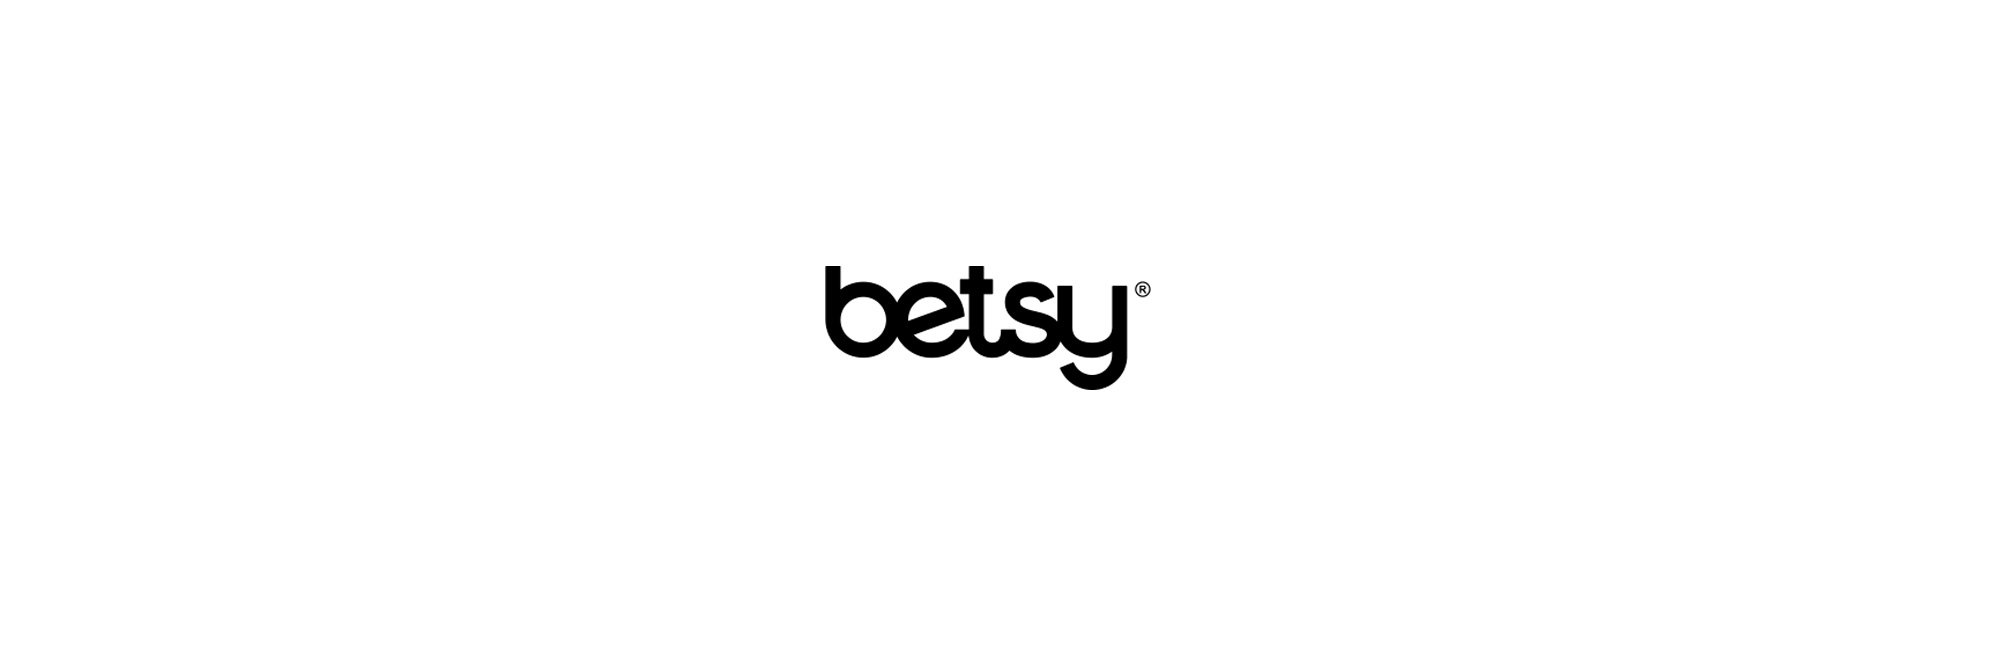 Съемка и монтаж видео для бренда обуви BETSY